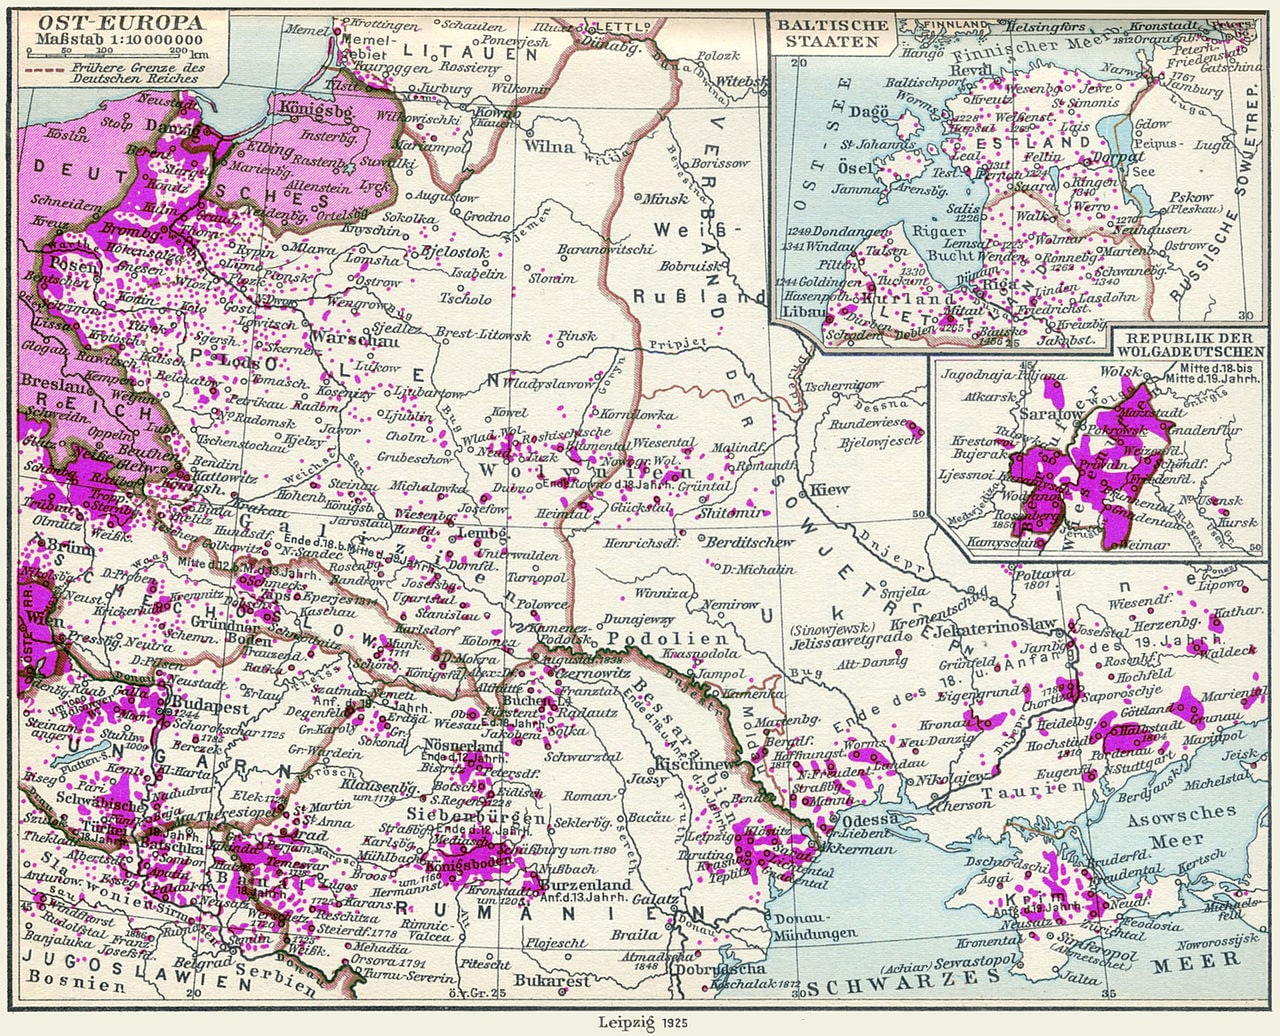 Język niemiecki w Europie Wschodniej w 1925 r.